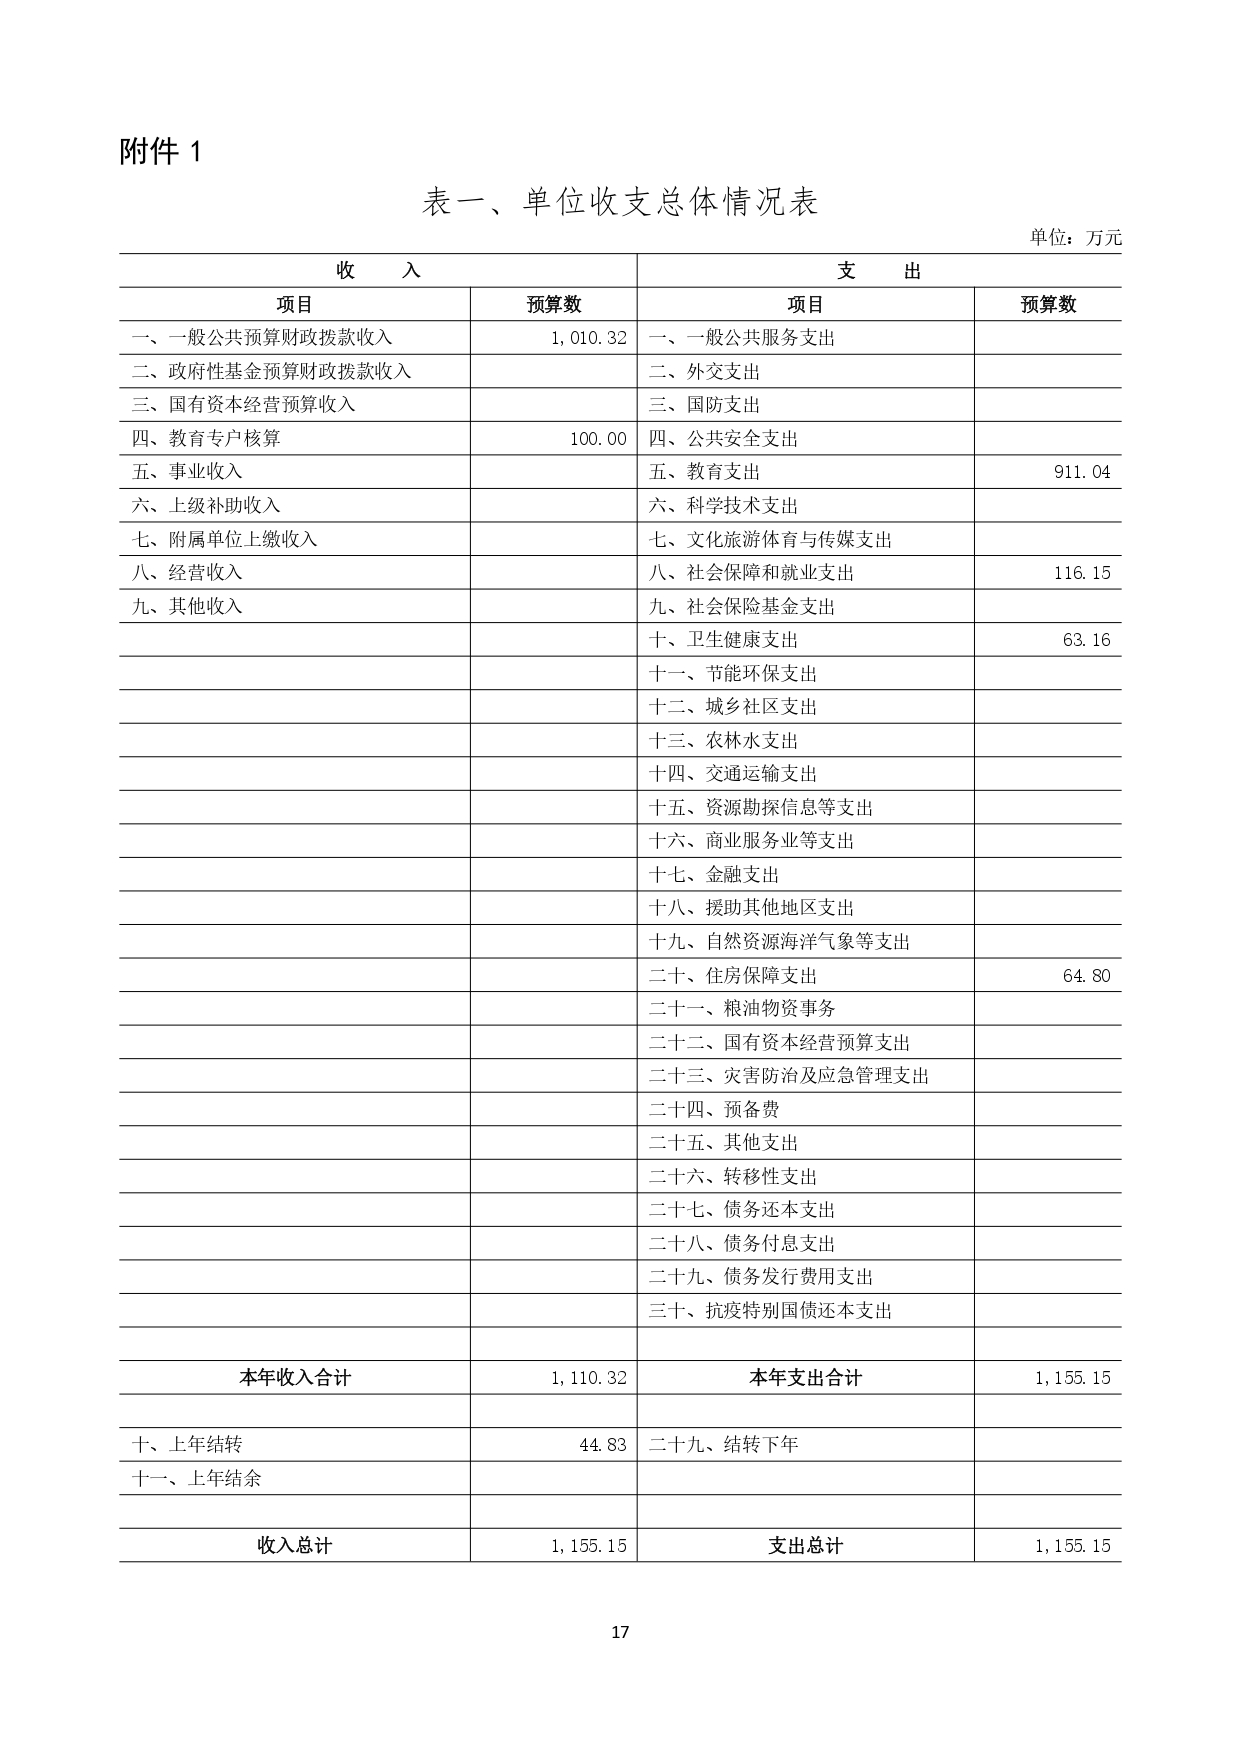 甘肃省广播电视学校2023年单位预算公开报告_page-0018.jpg